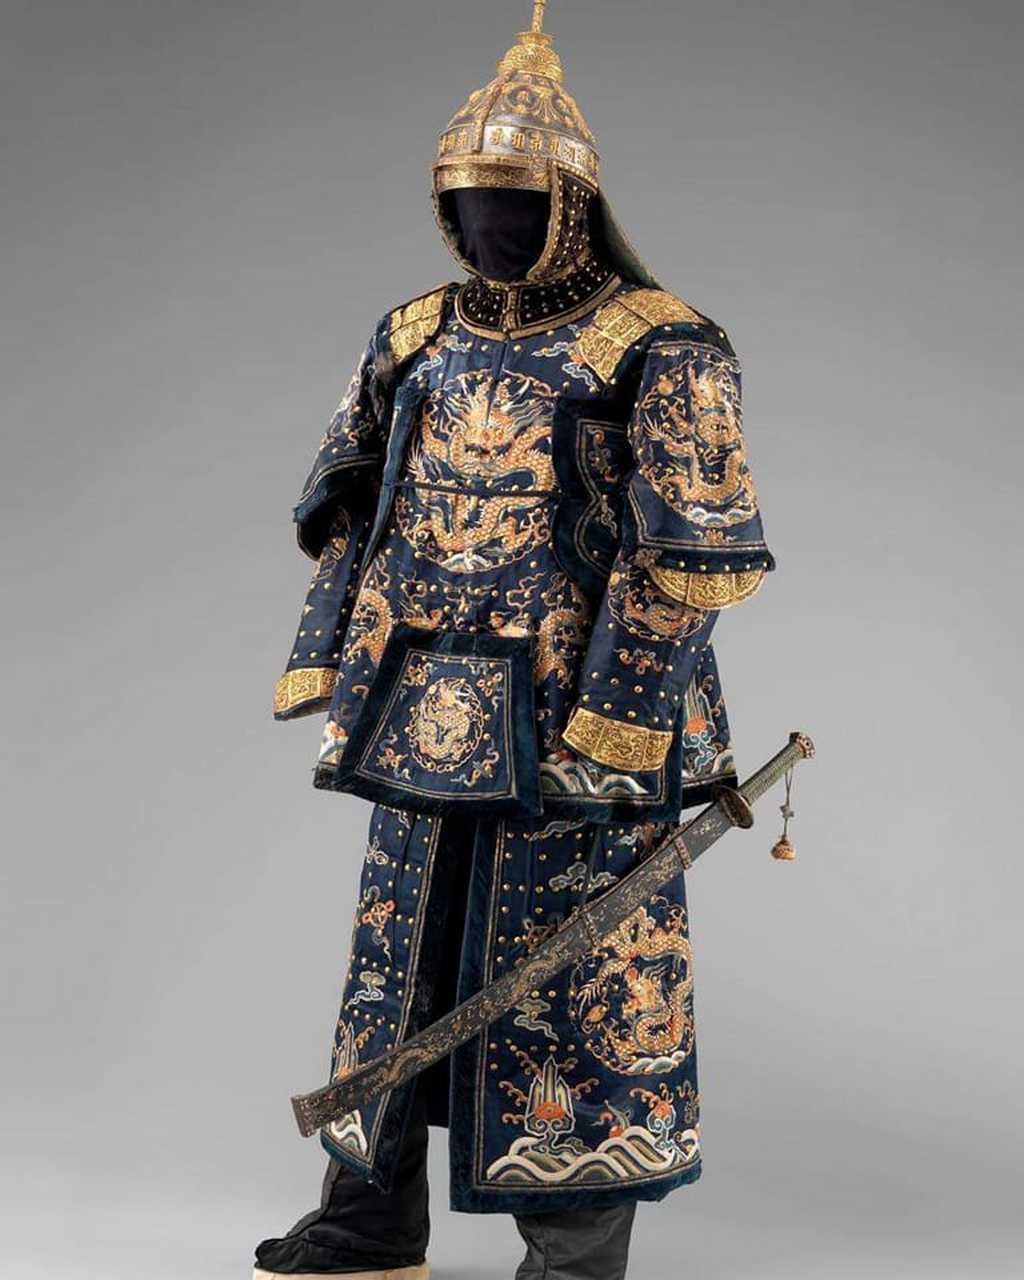 原标题,18世纪清皇家卫队高级军官的铠甲  